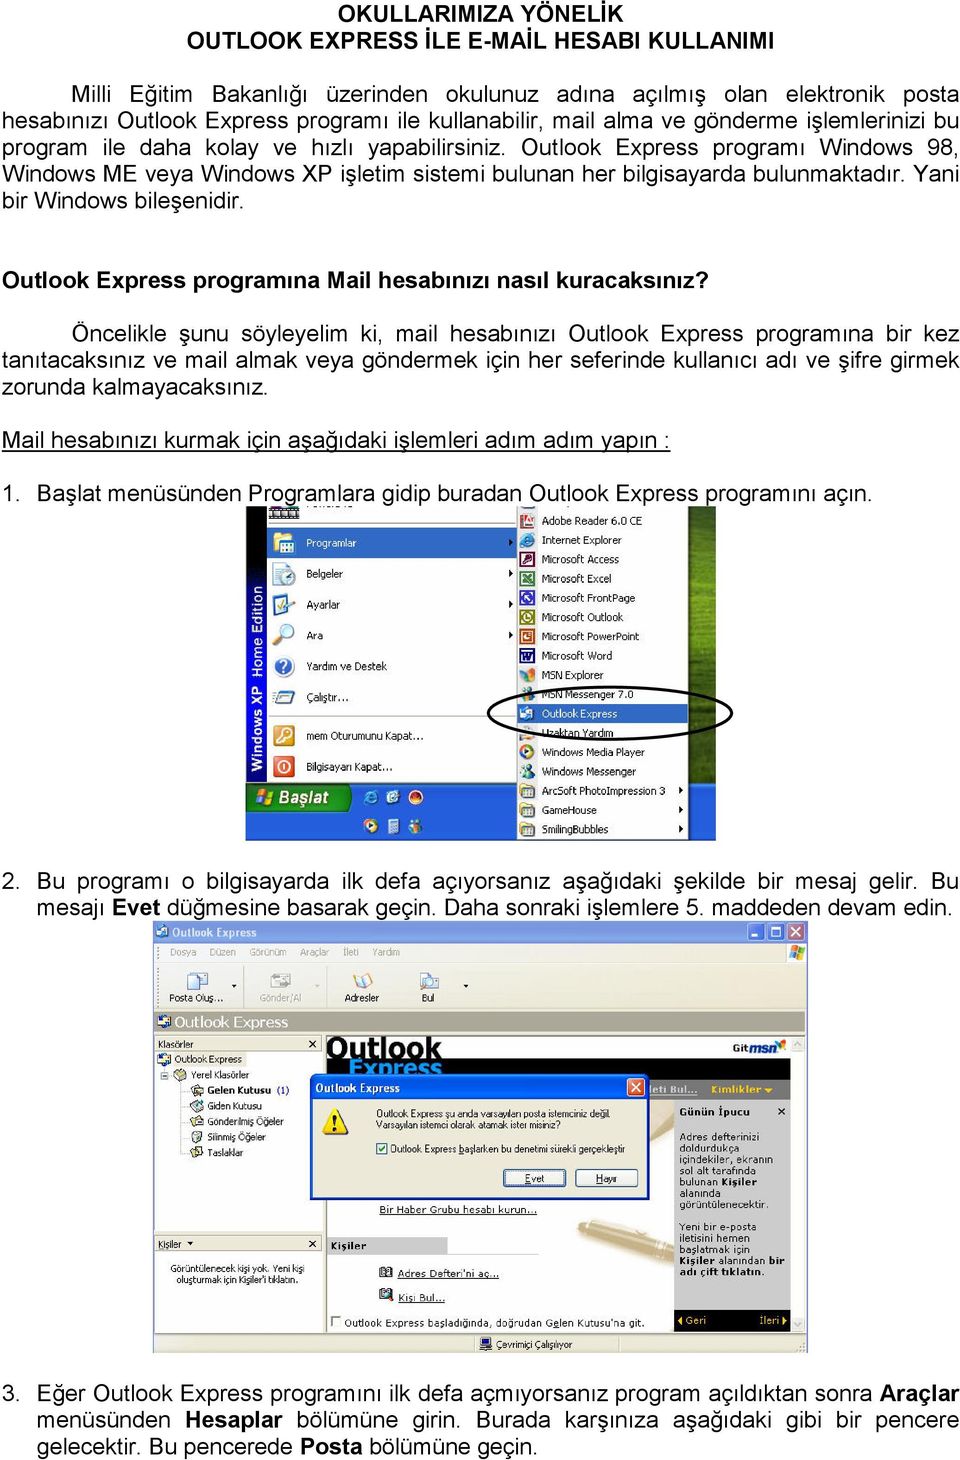 Outlook Express programı Windows 98, Windows ME veya Windows XP işletim sistemi bulunan her bilgisayarda bulunmaktadır. Yani bir Windows bileşenidir.